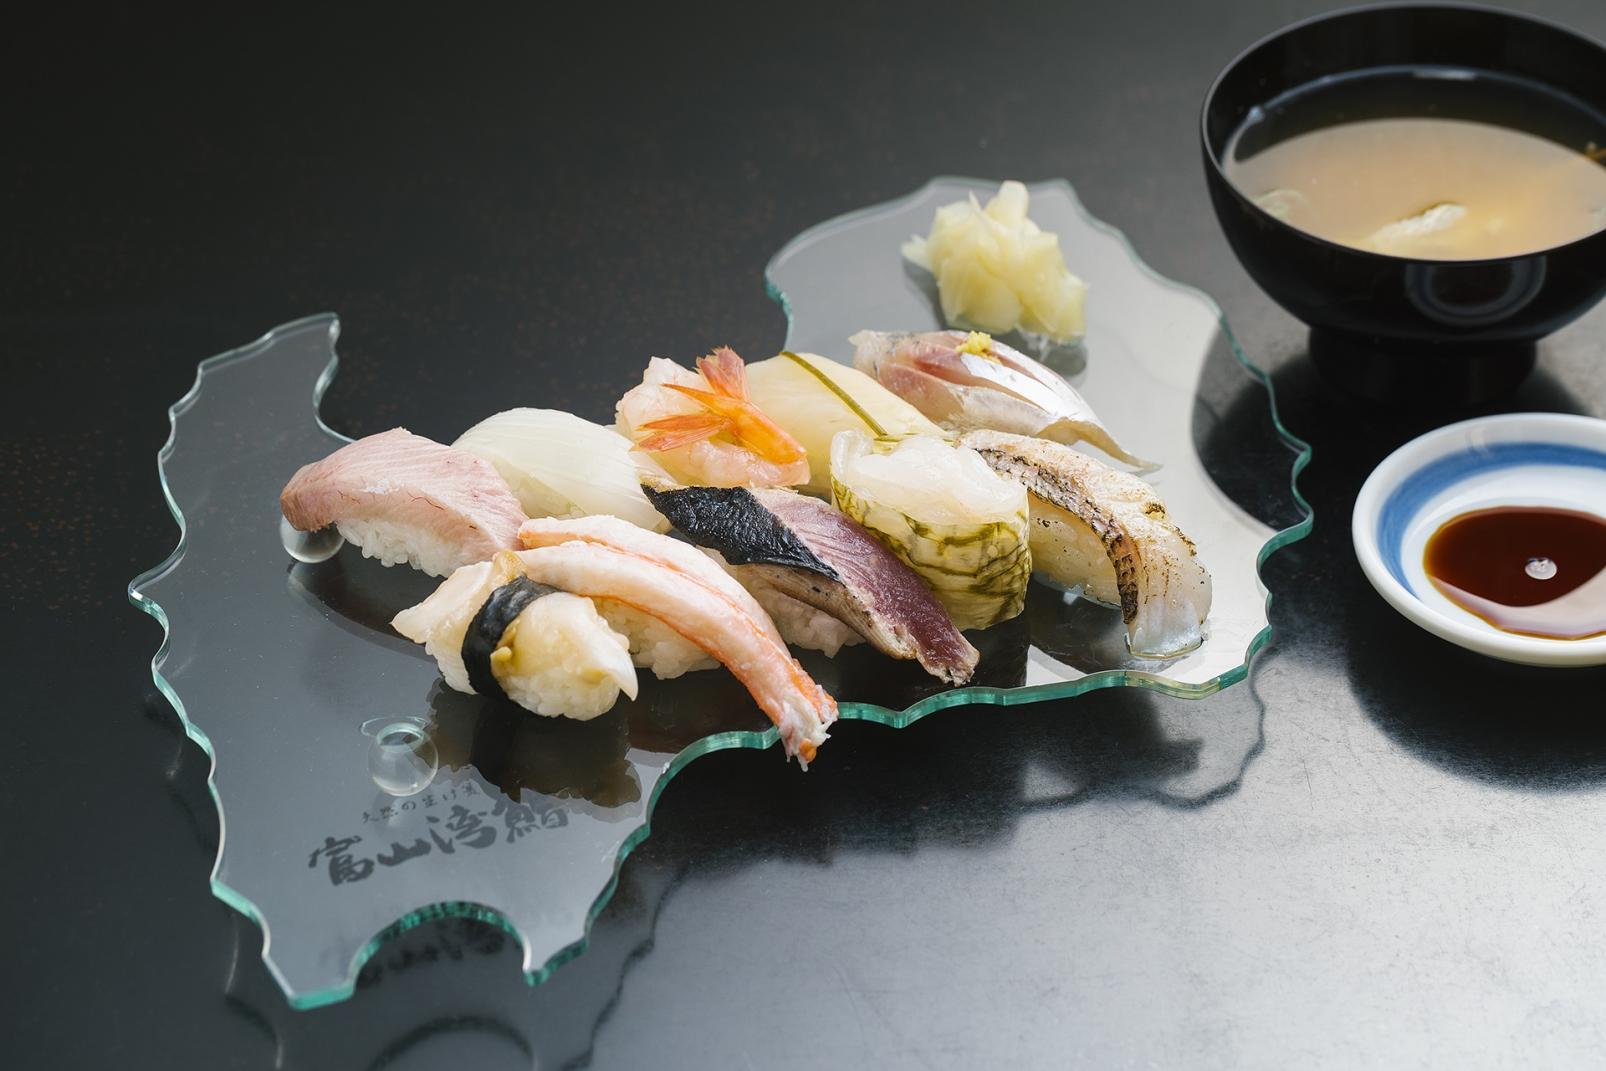 The Finest of Toyama’s Uniquely Fresh Sushi